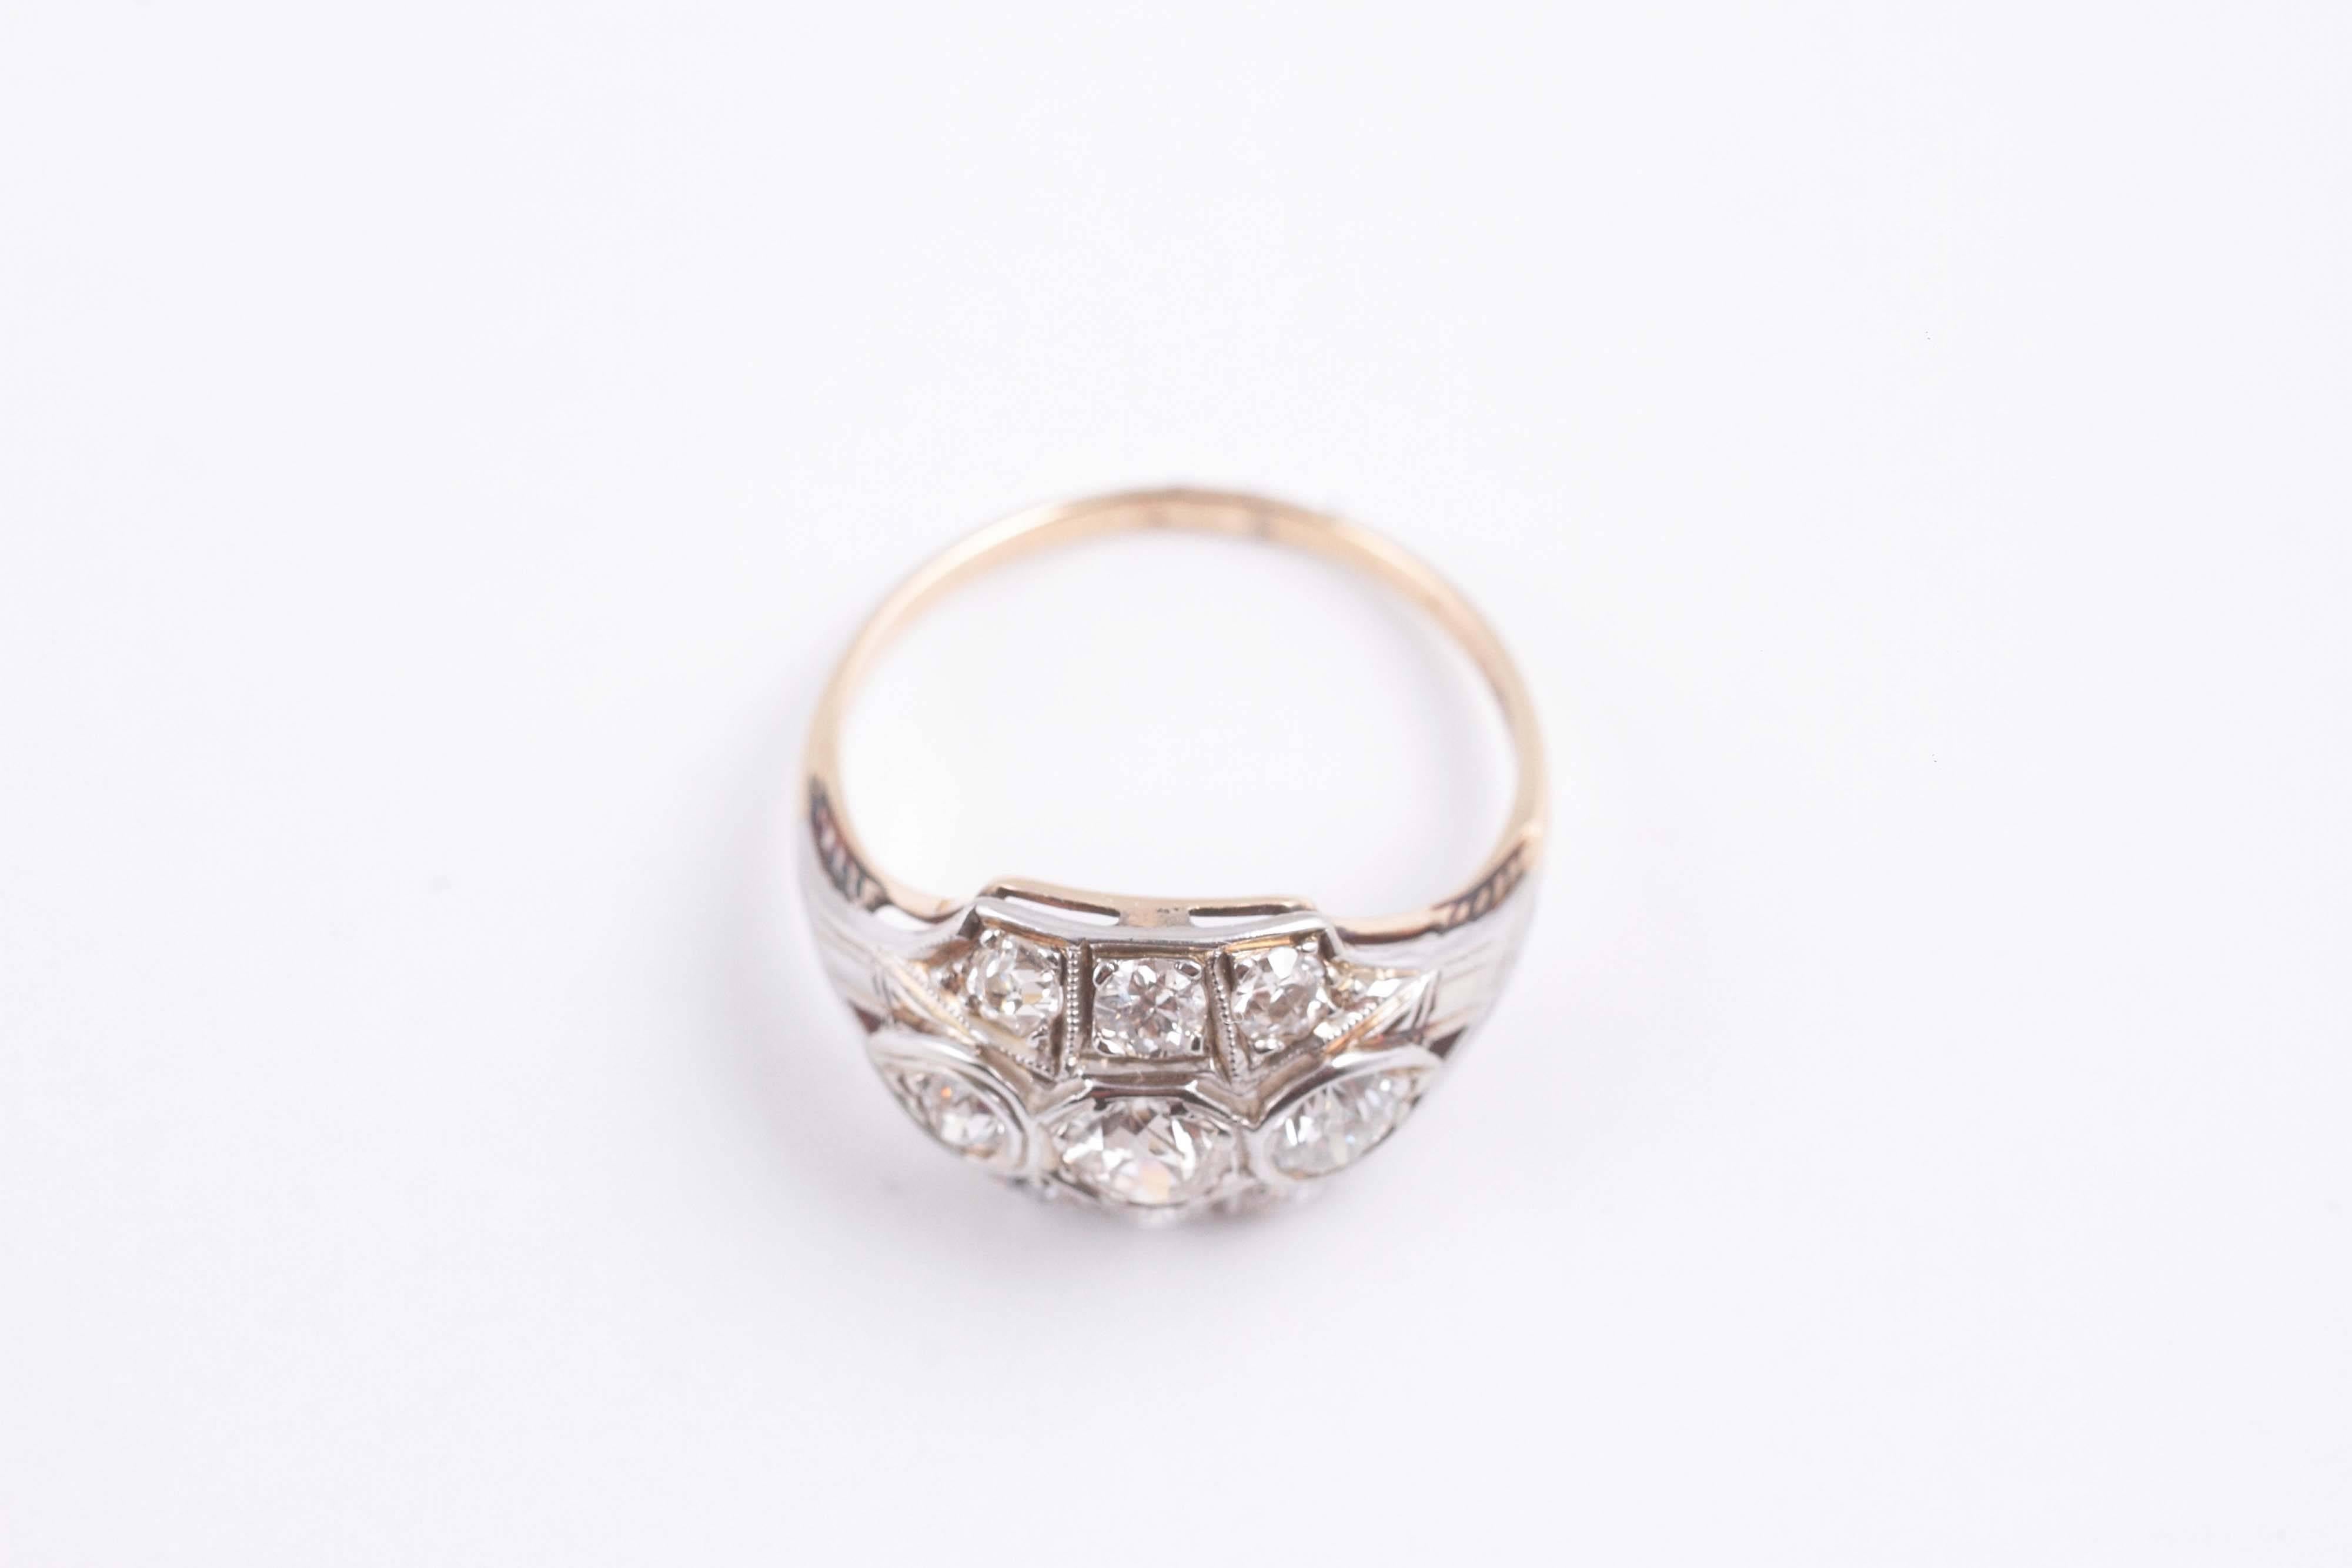 1.20 Carats Old European Cut Diamond Wedding Ring in 14 Karat Gold 2